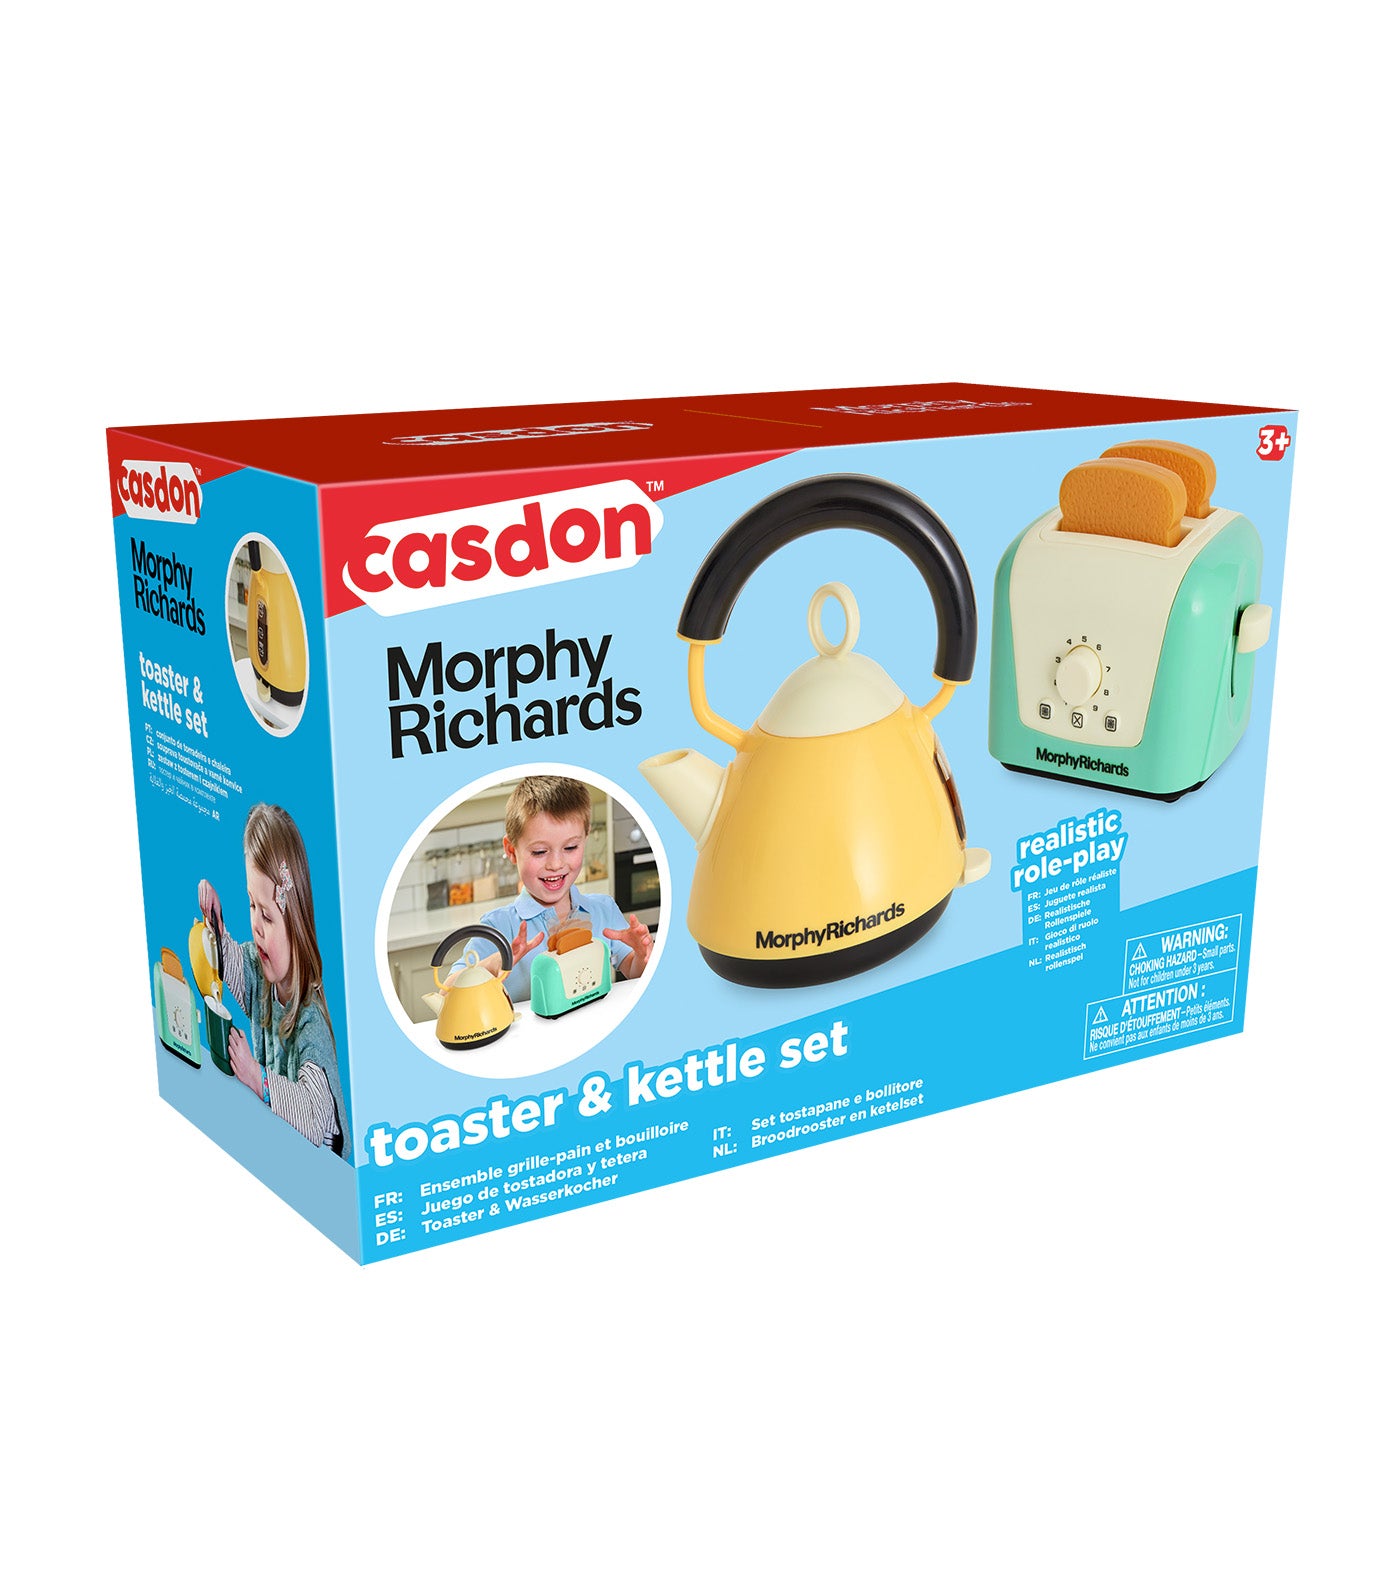 Casdon Morphy Richards Toaster & Kettle Playset